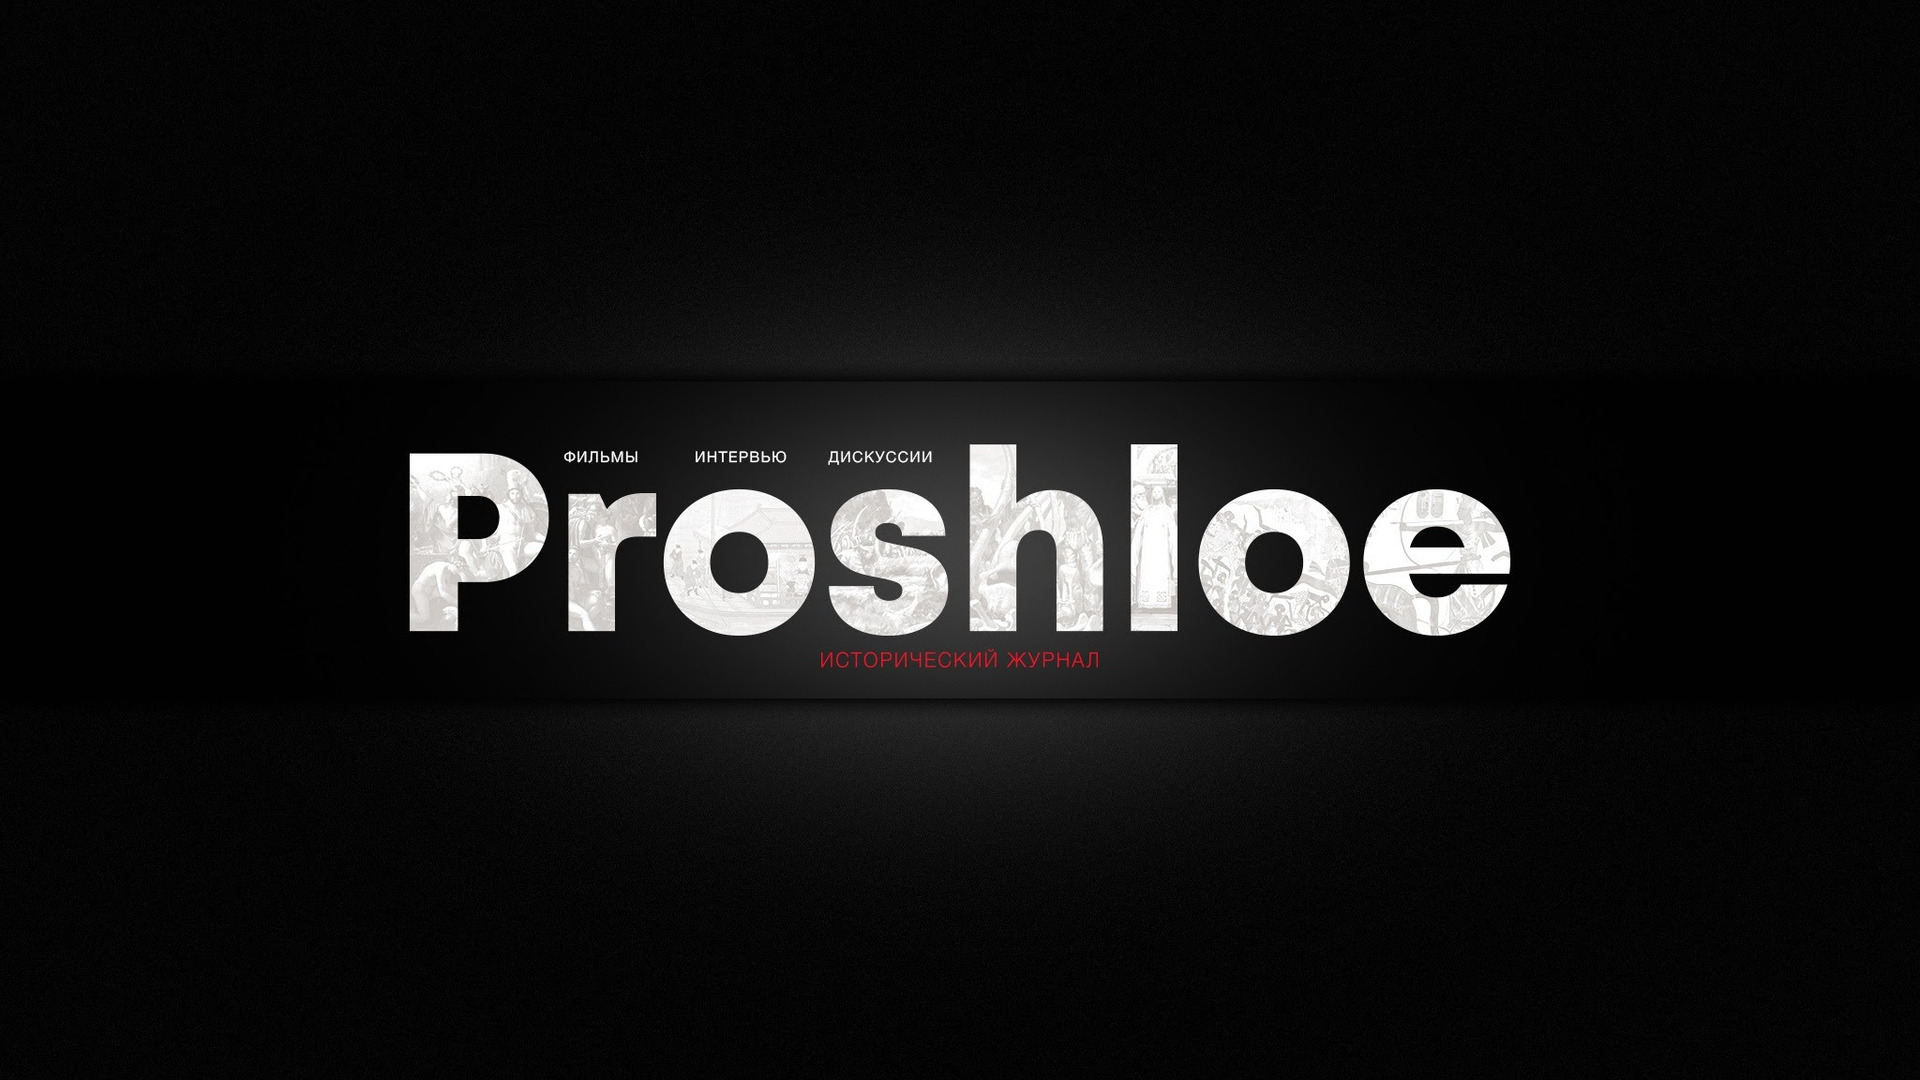 Show Proshloe исторический журнал